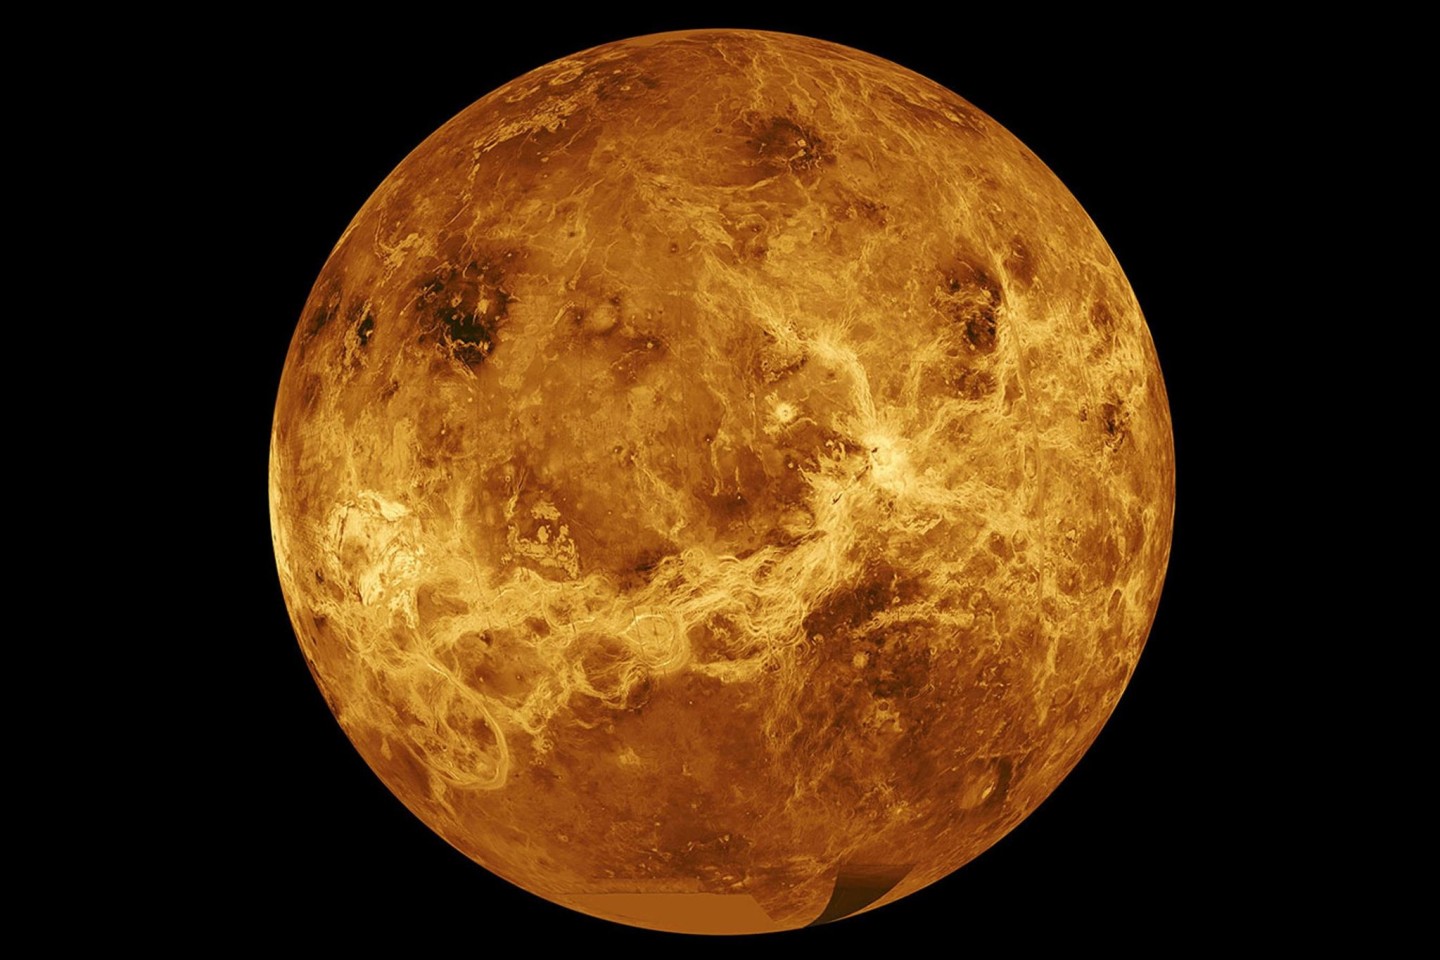 Russland will gemeinsam mit den USA den Planeten Venus erforschen.